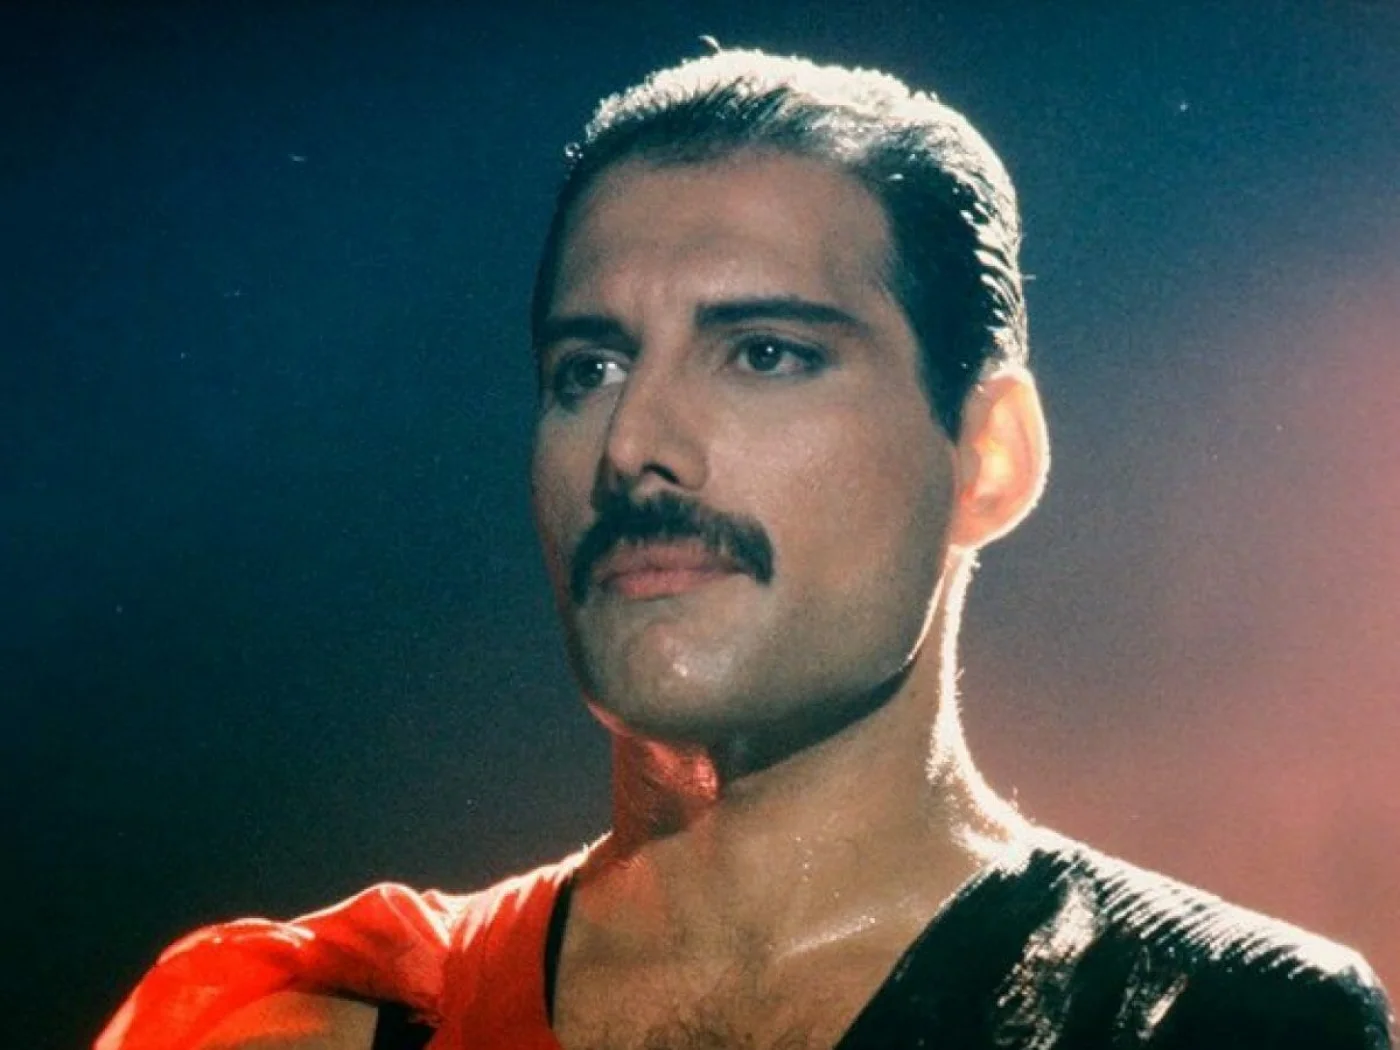 Queen confirma lanamento de msica indita com vocais de Freddie Mercury!